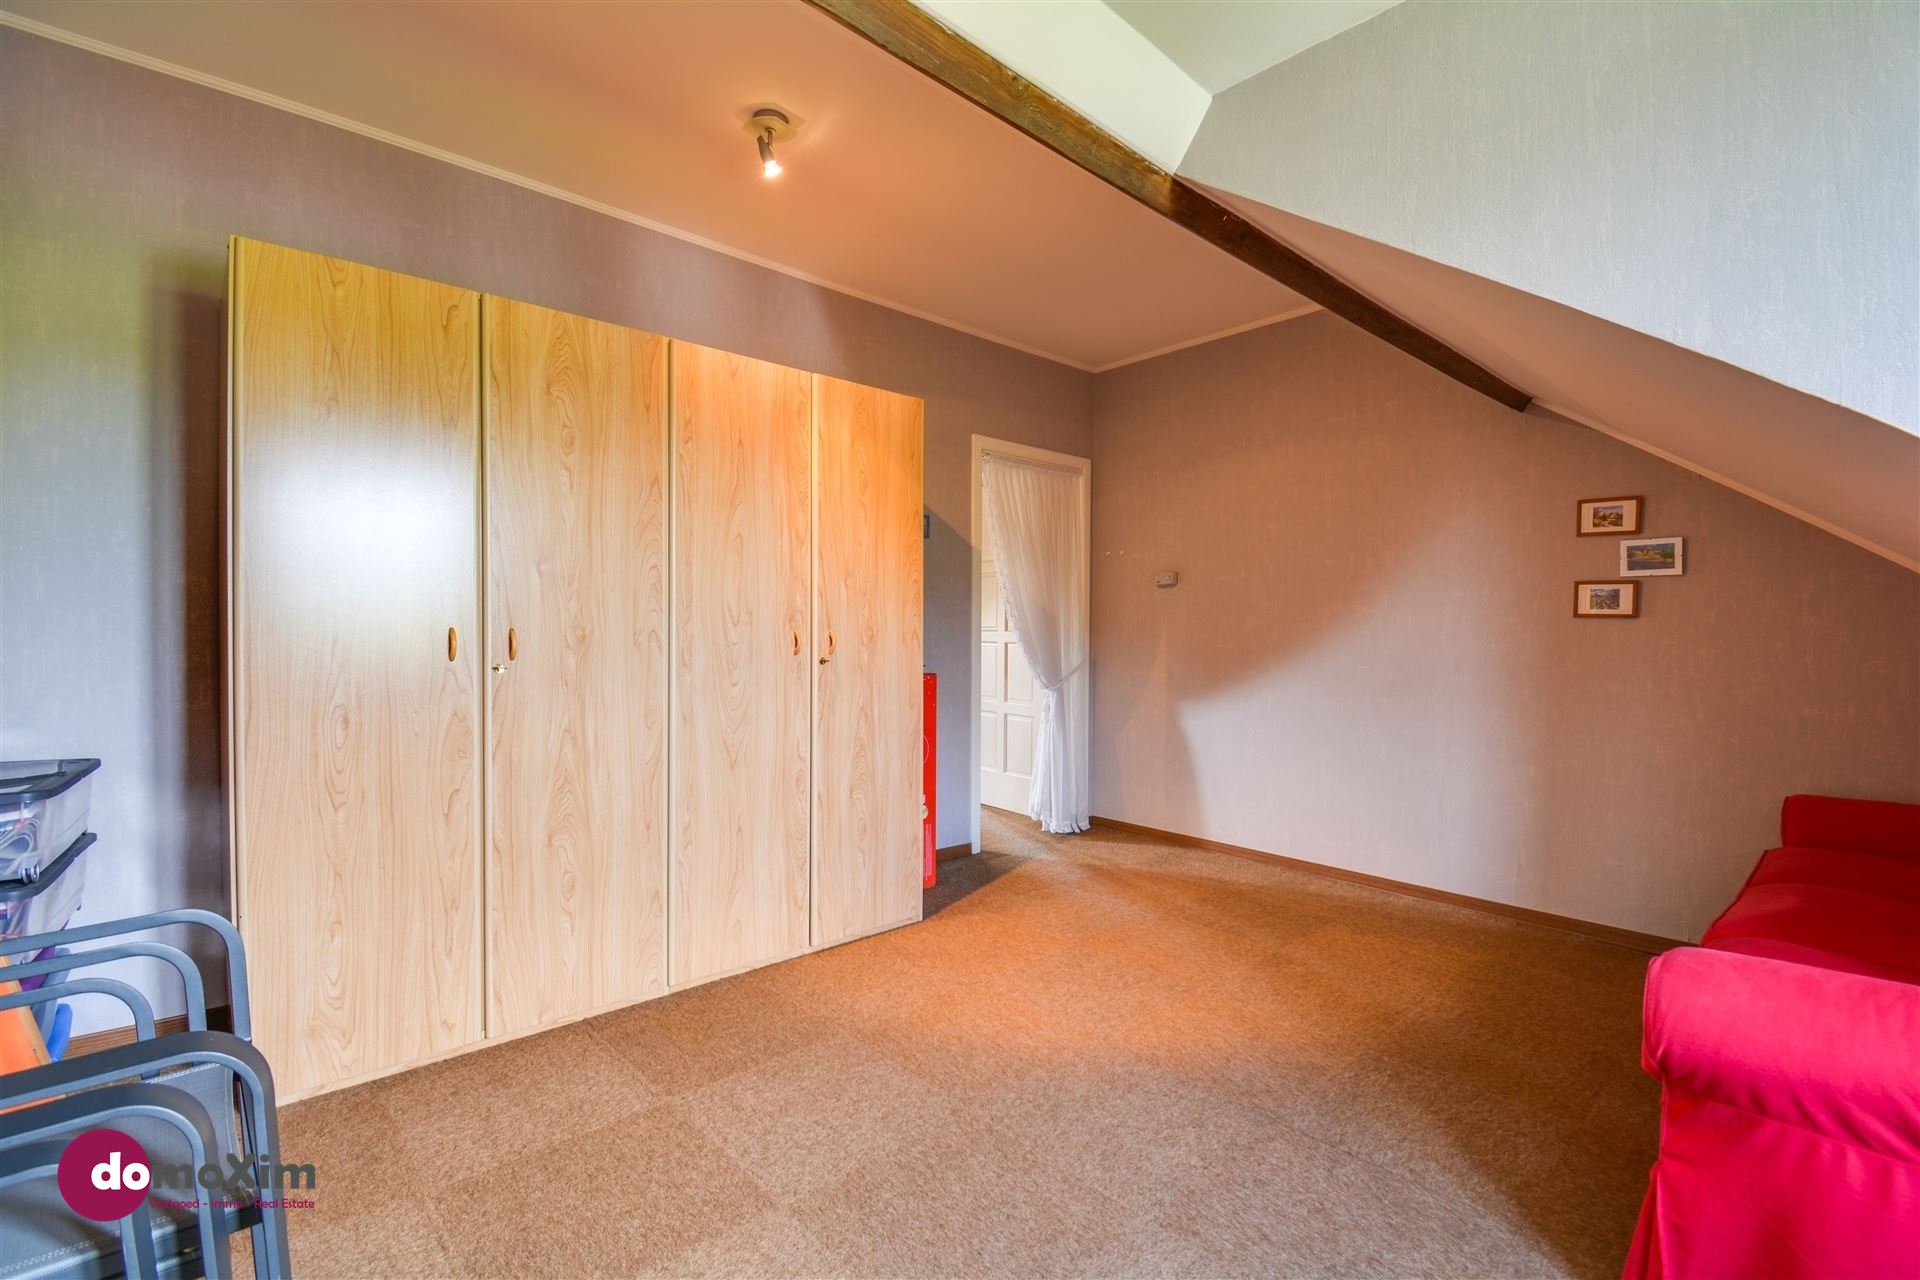 VERKOCHT BINNEN DE MAAND - Karaktervolle, gerenoveerde woning met 5 slaapkamers in Boortmeerbeek foto 21